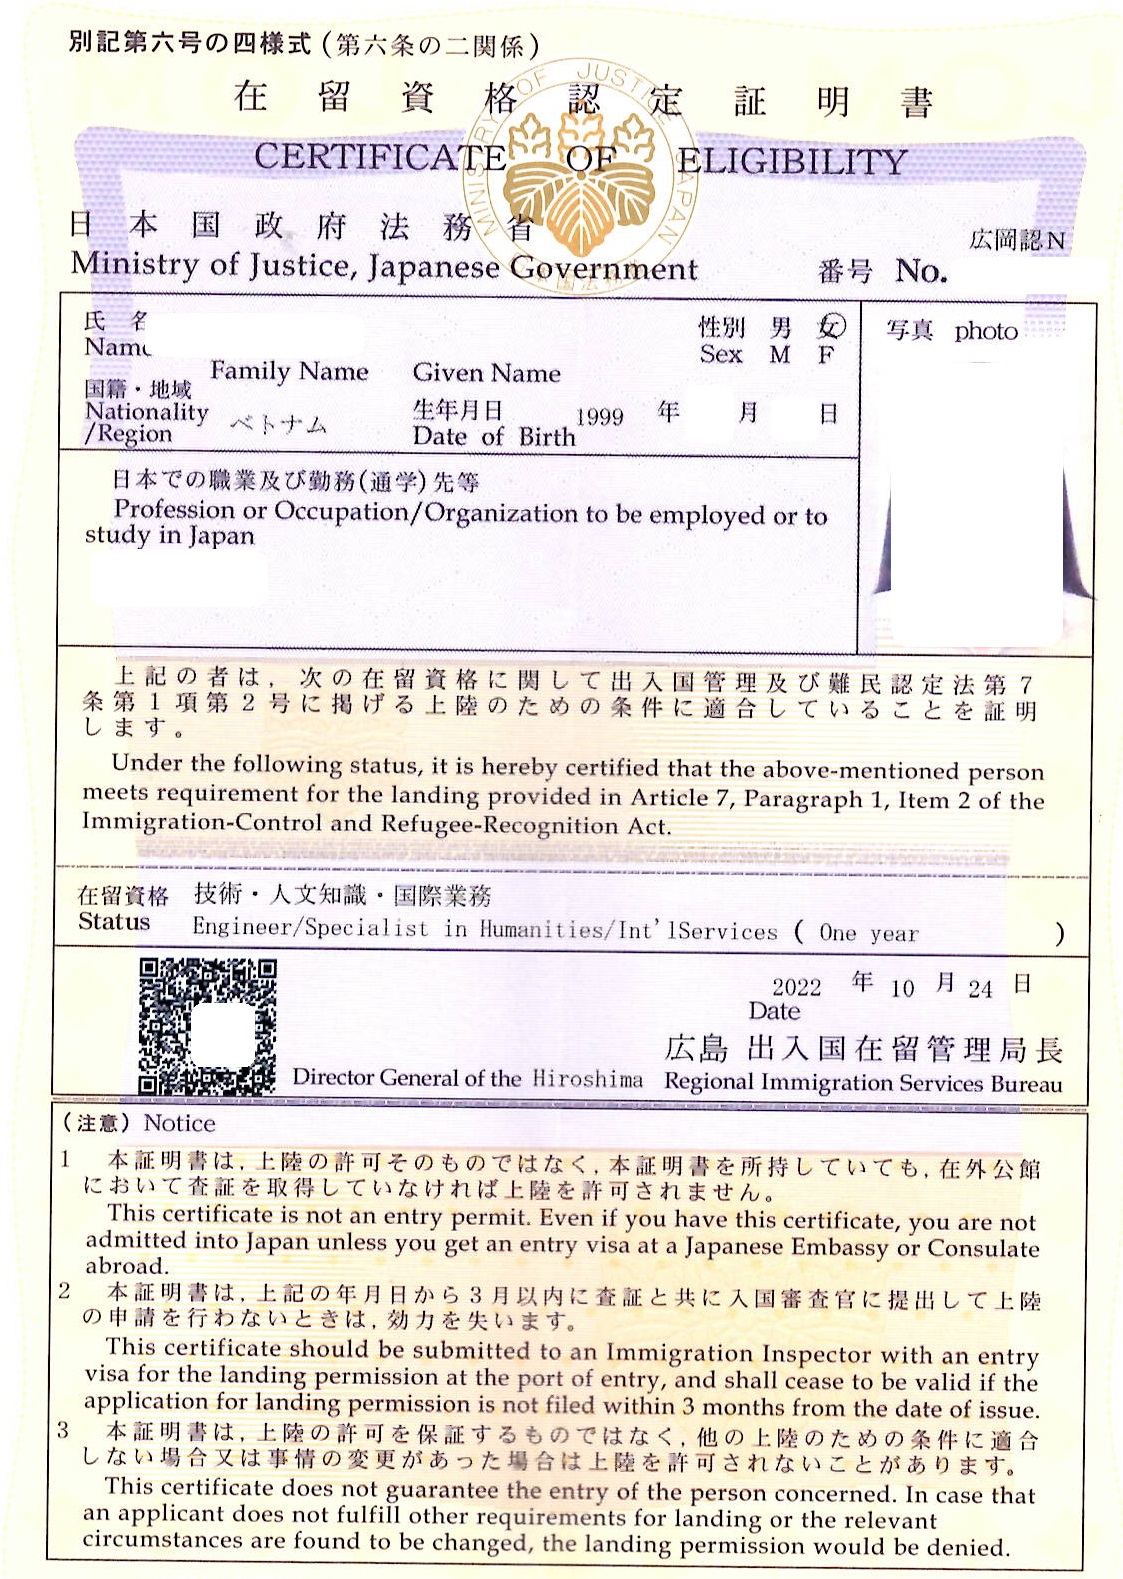 ベトナム人「技術・人文知識・国際業務」の在留資格認定証明書を取得